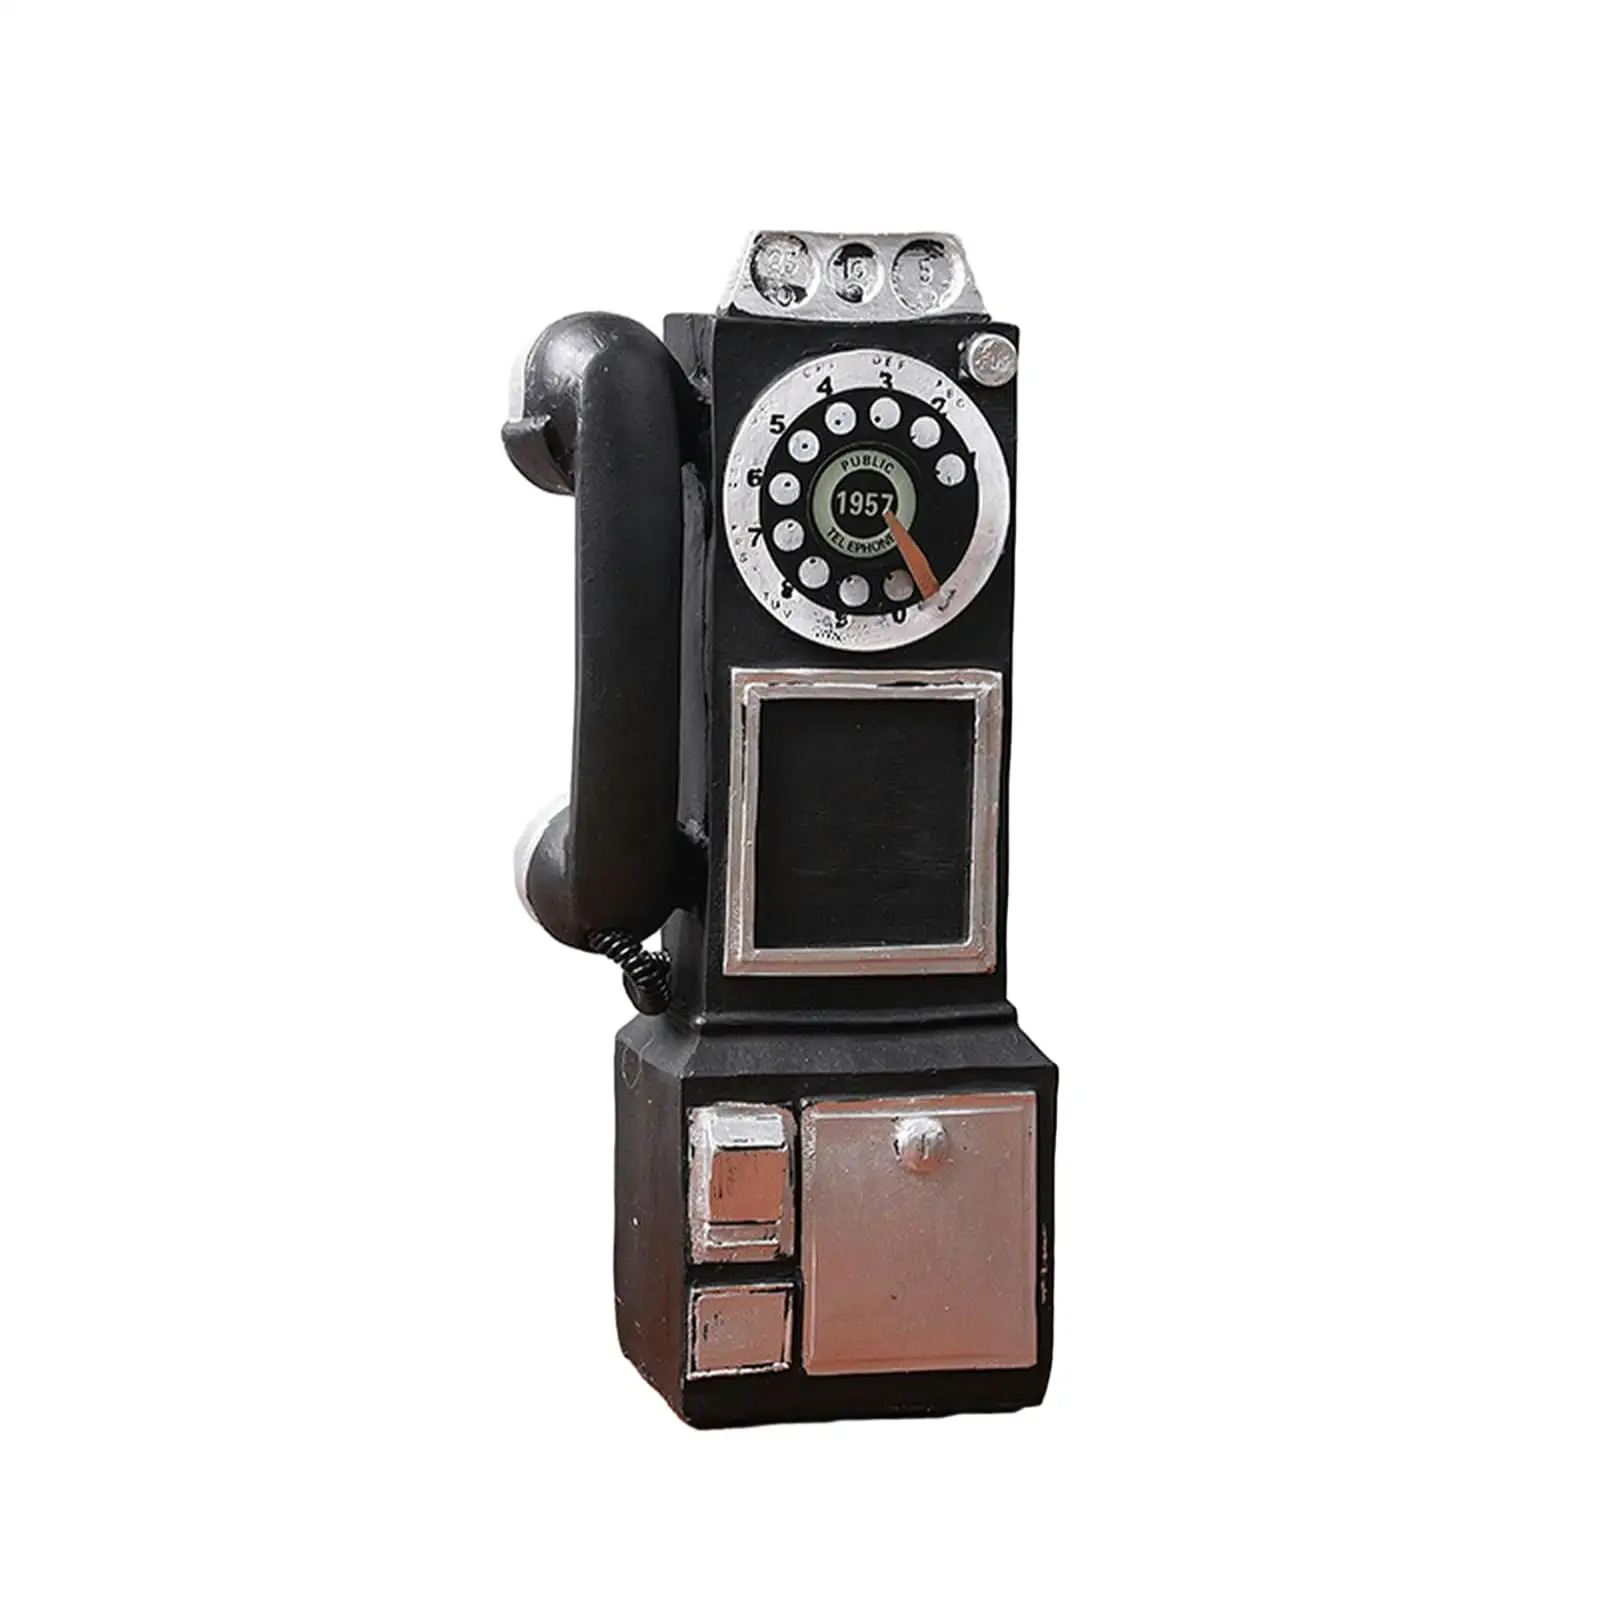 Modelo de teléfono vintage, accesorios de teléfono fijo antiguos negros, decoración de pared de resina antigua